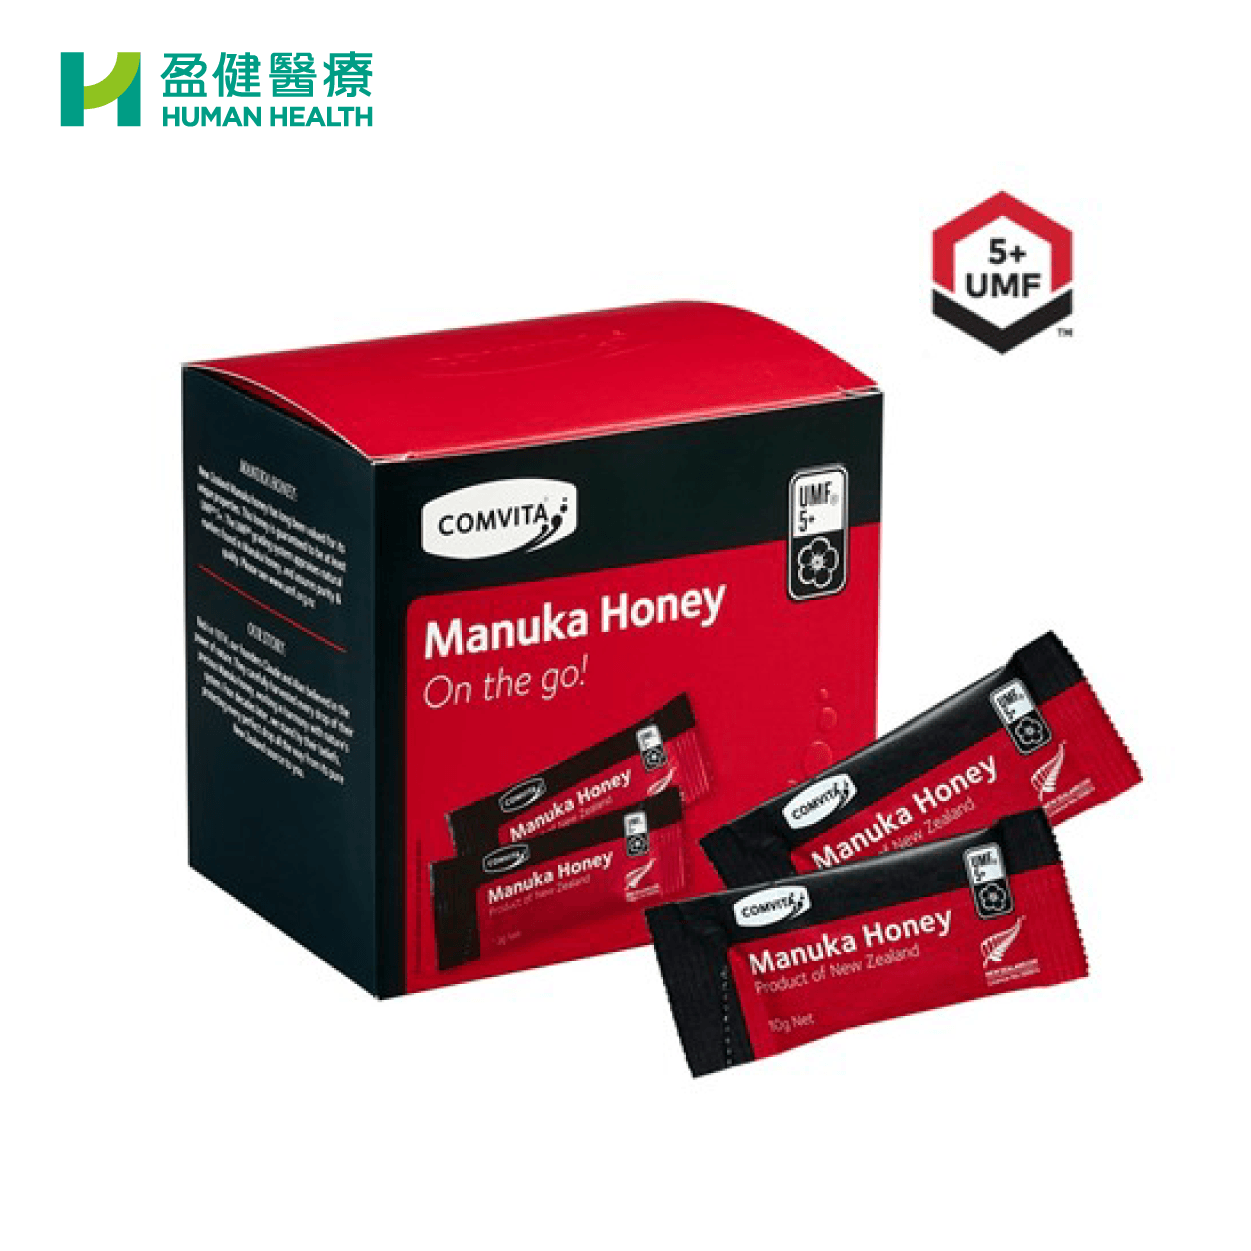 康維他 Comvita UMF®5+麥蘆卡蜂蜜便攜裝 (30包) (H-MAN003) - 盈健醫療 -